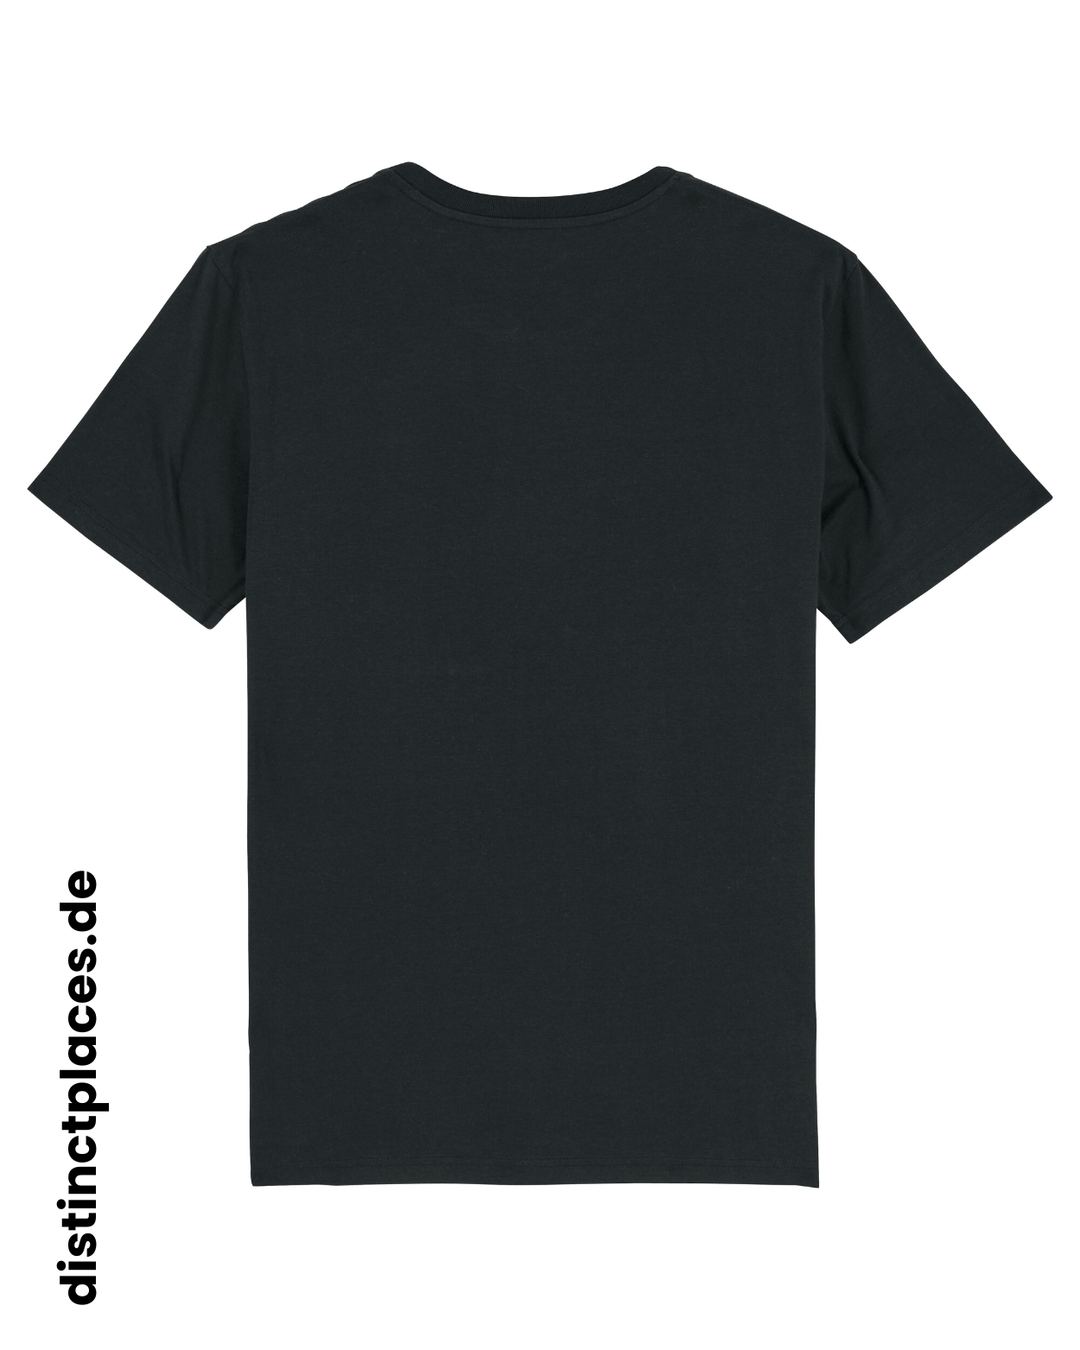 Schwarzes fairtrade, vegan und bio-baumwoll T-Shirt von hinten mit einem minimalistischem weißen Logo, beziehungsweise Wappen für Ludwigshafen